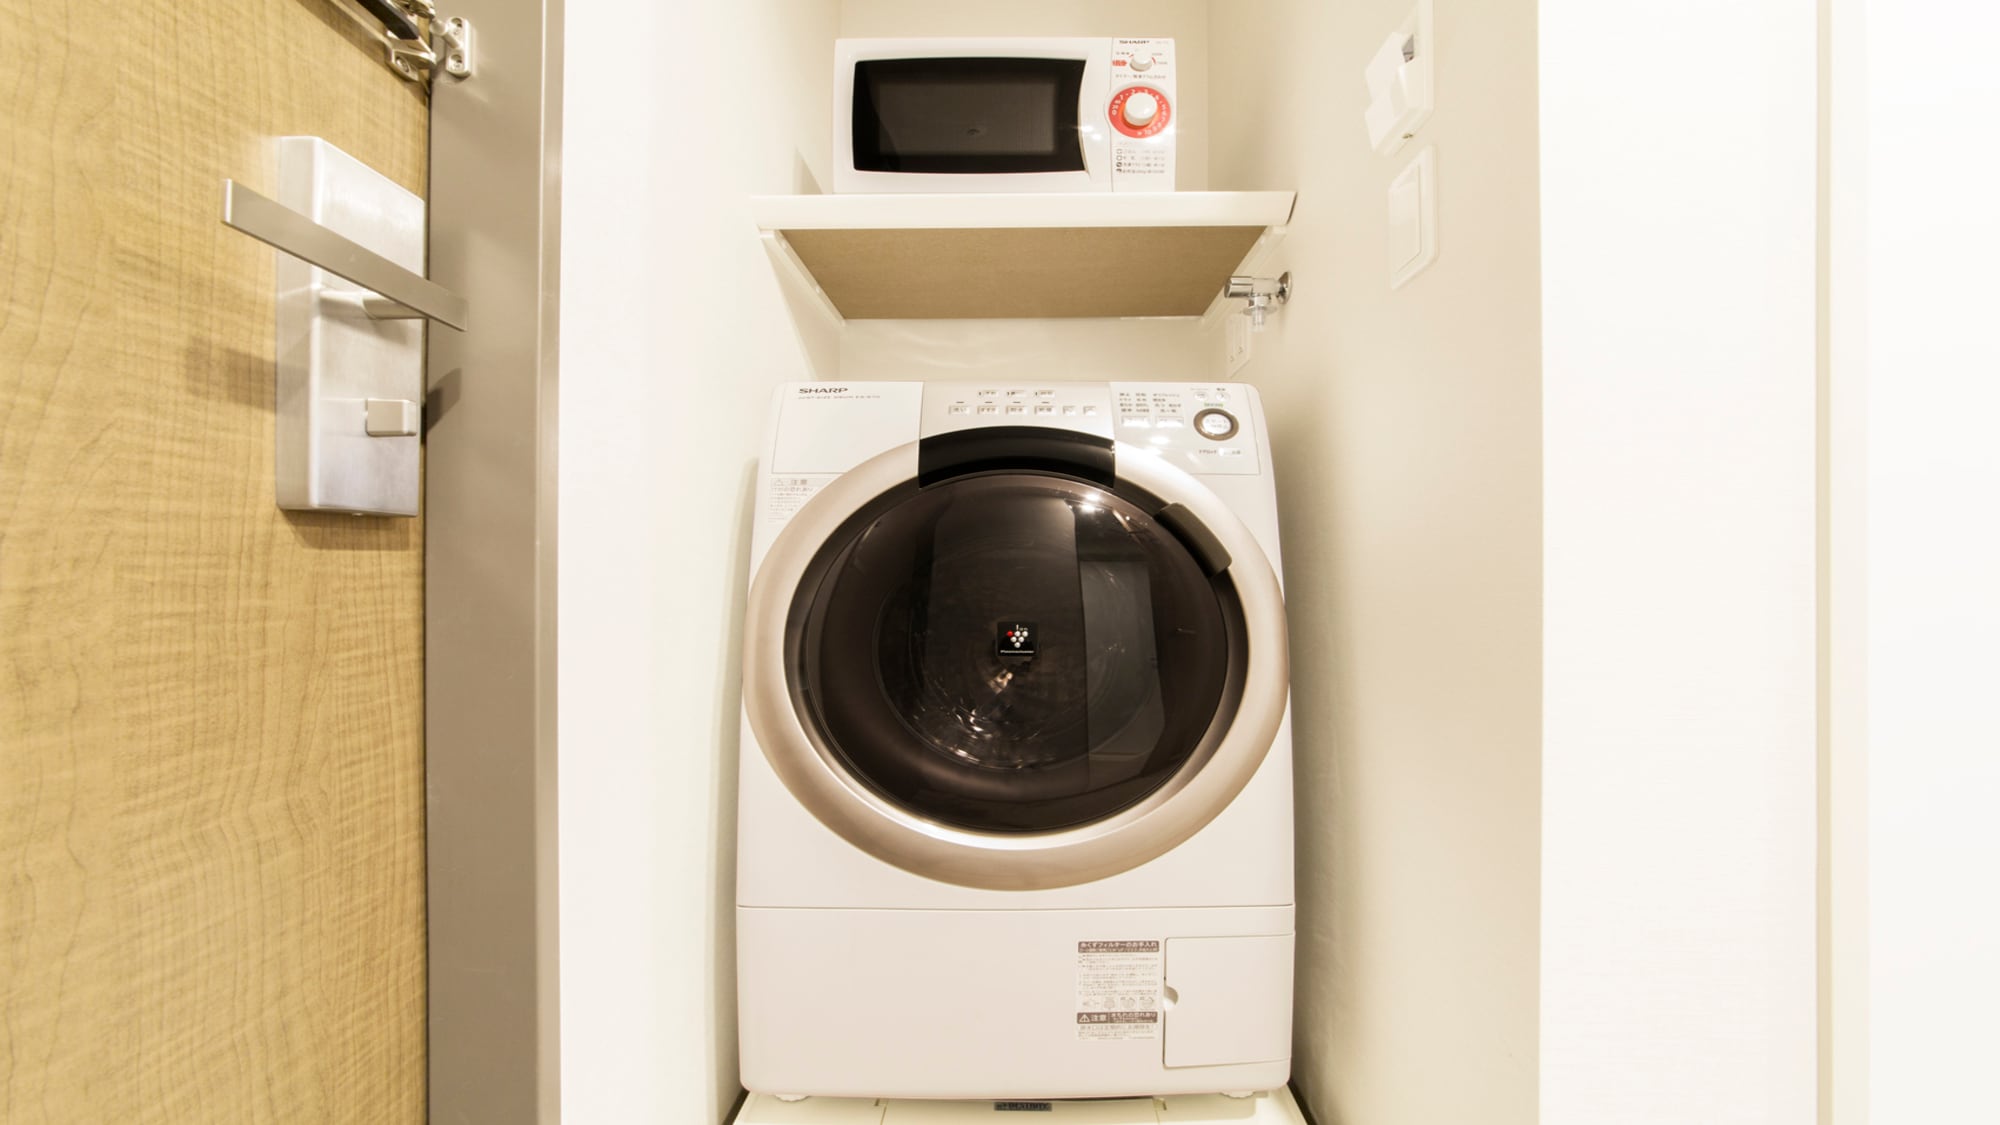 Washing and drying machine